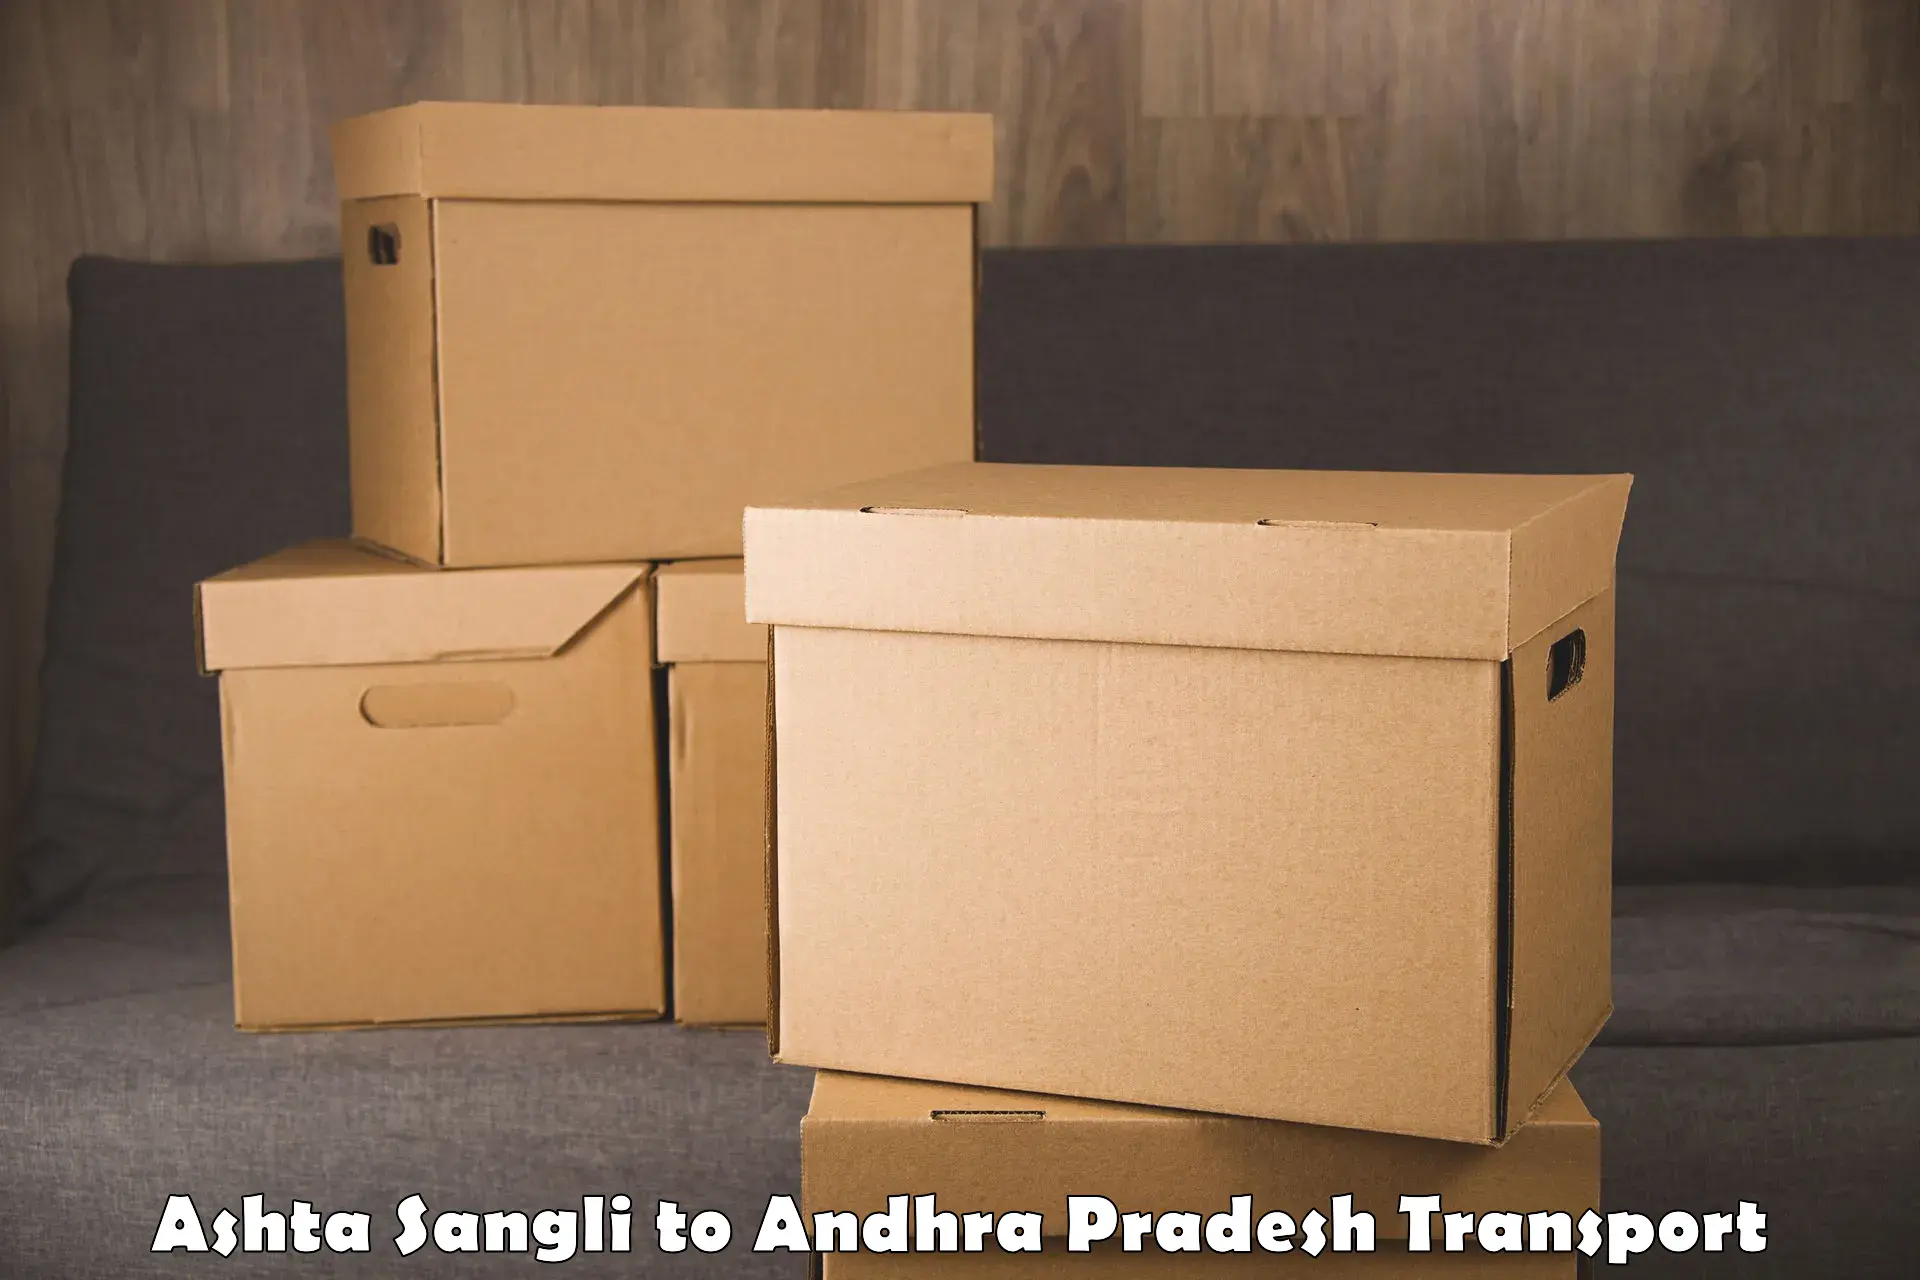 Delivery service Ashta Sangli to Bhattiprolu